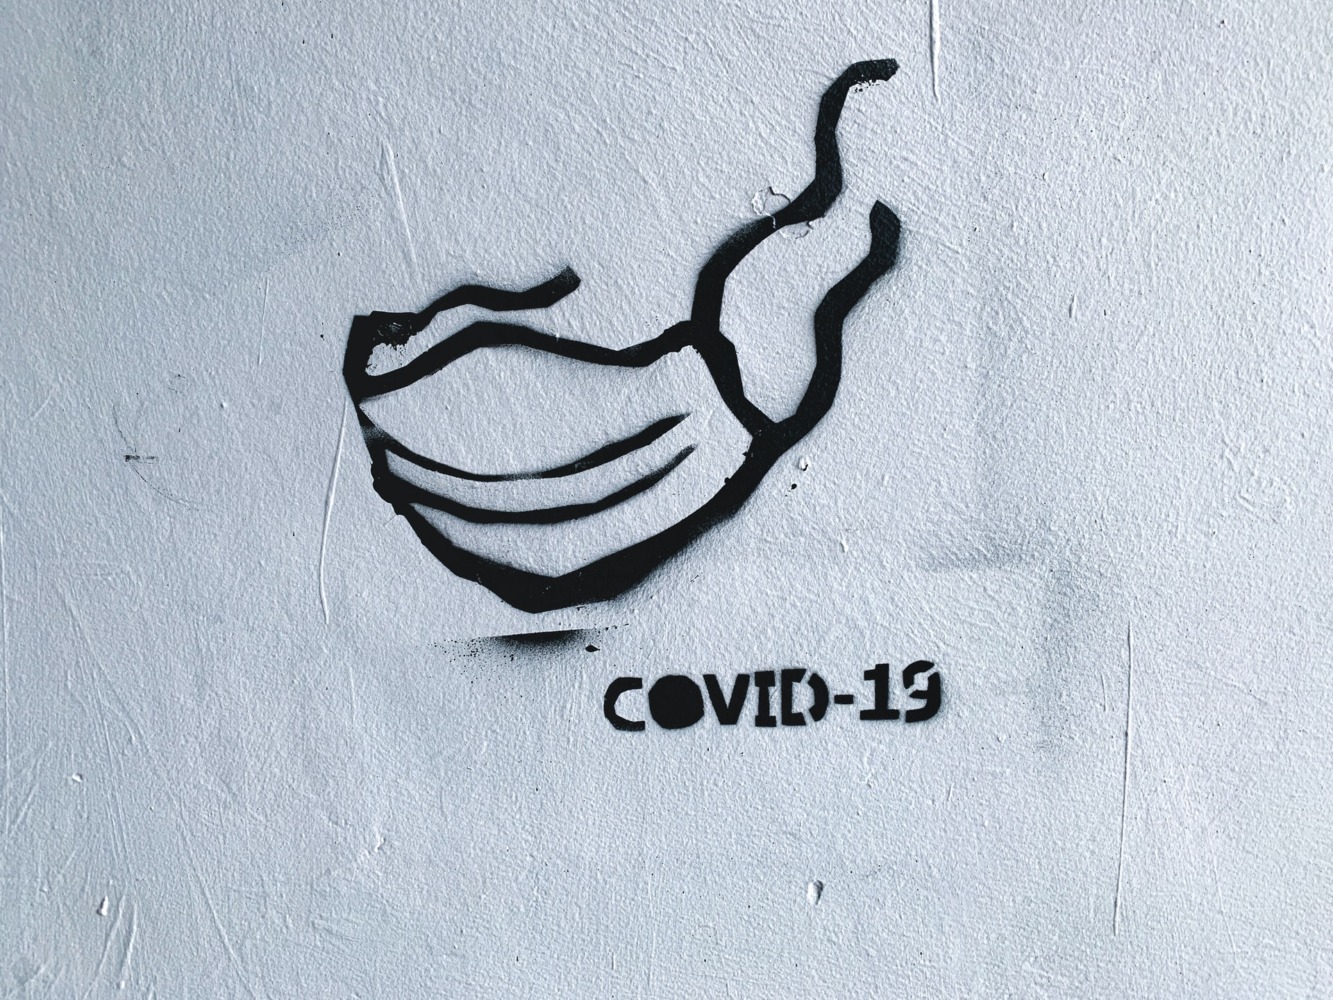 Covid-19 street art